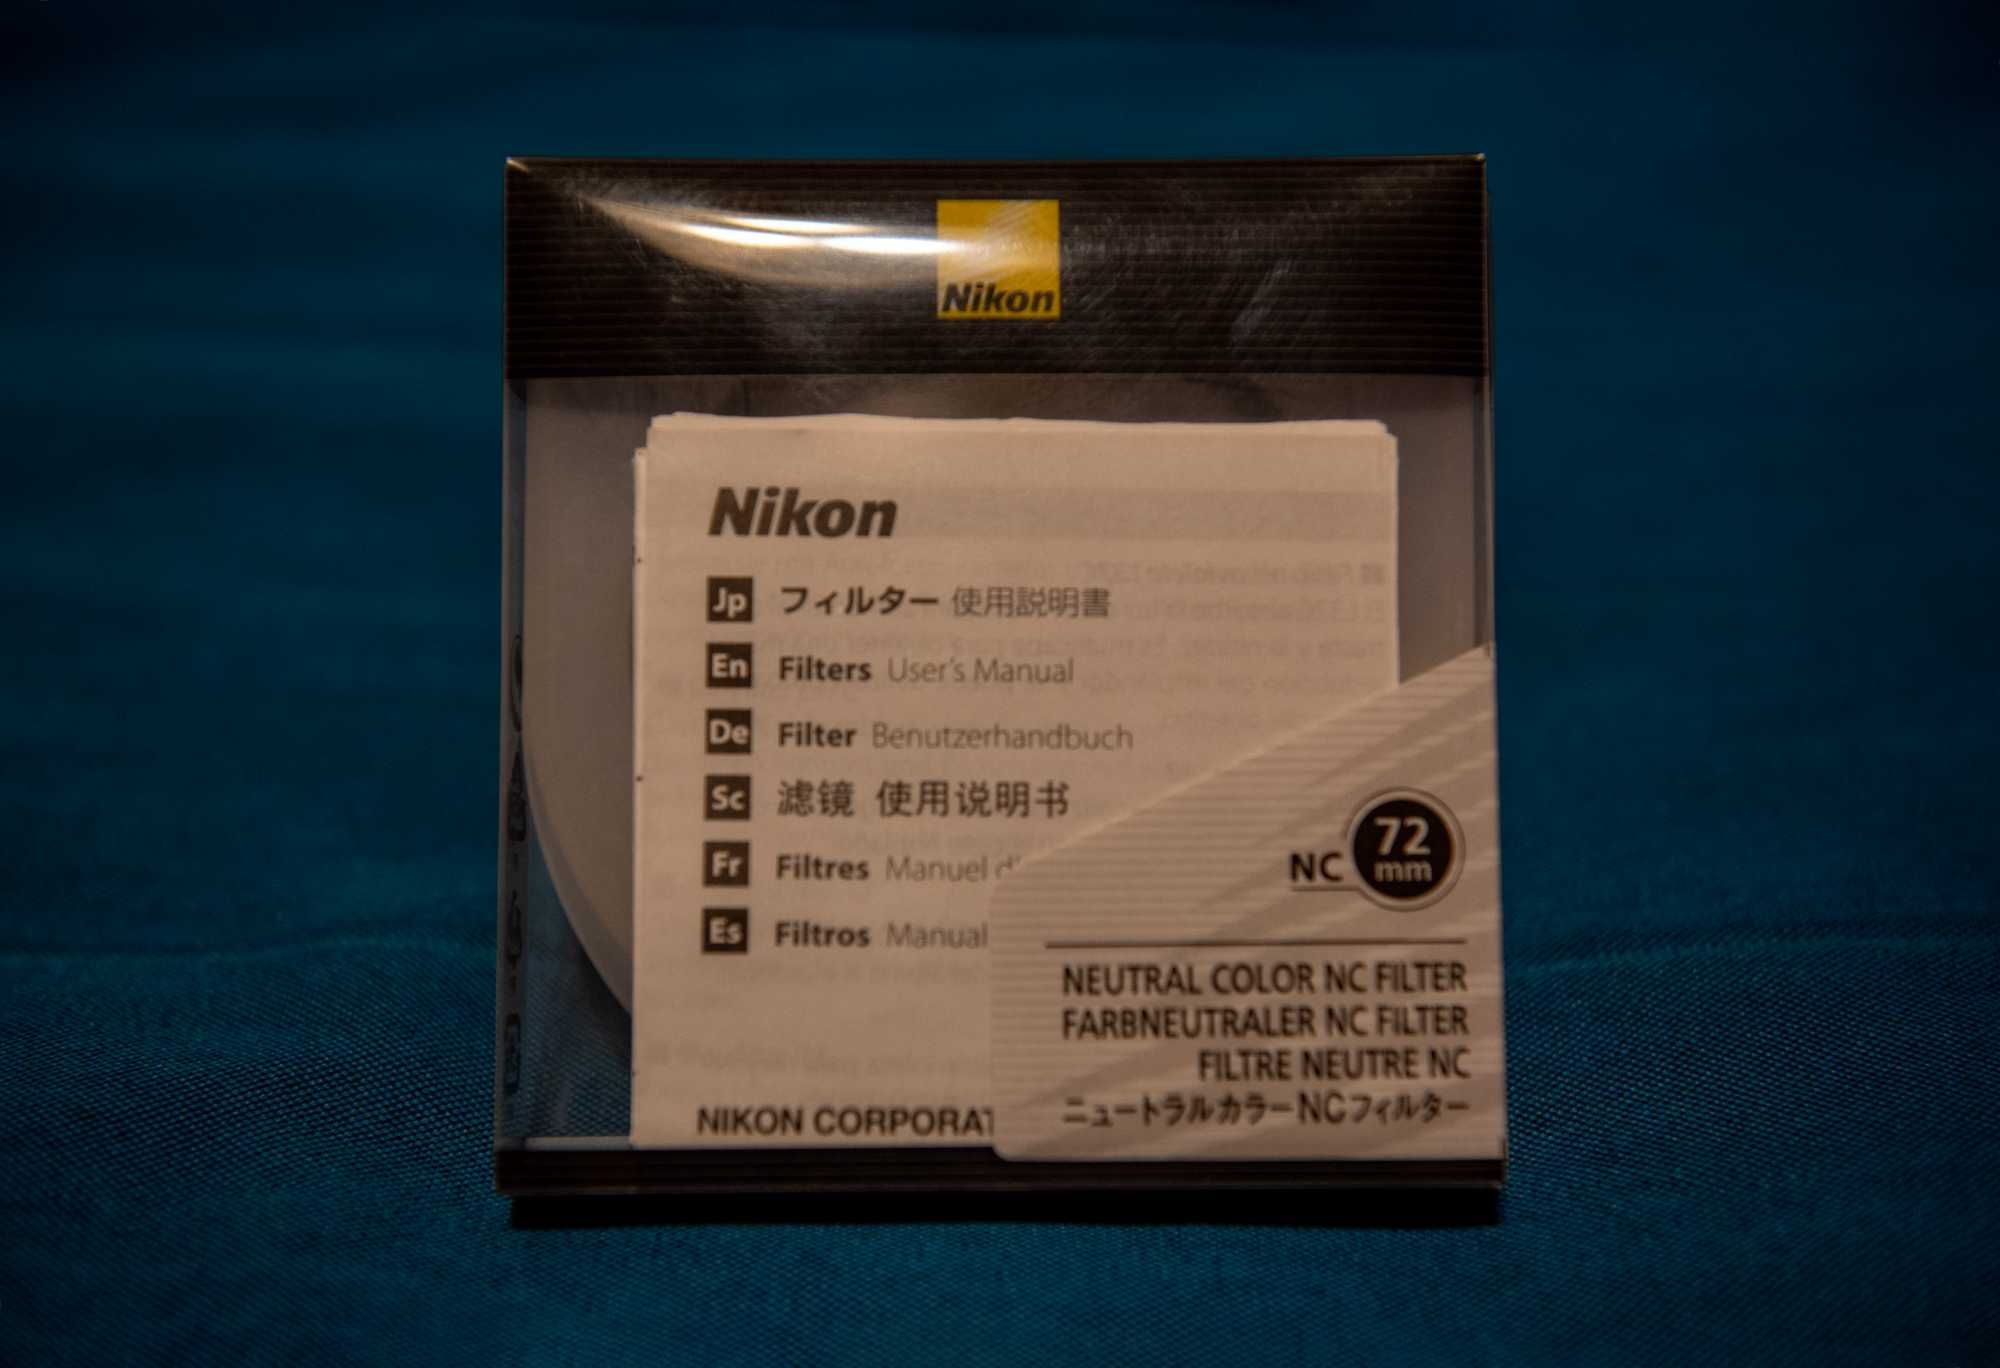 Filtr ochronny Nikon NC 72 mm